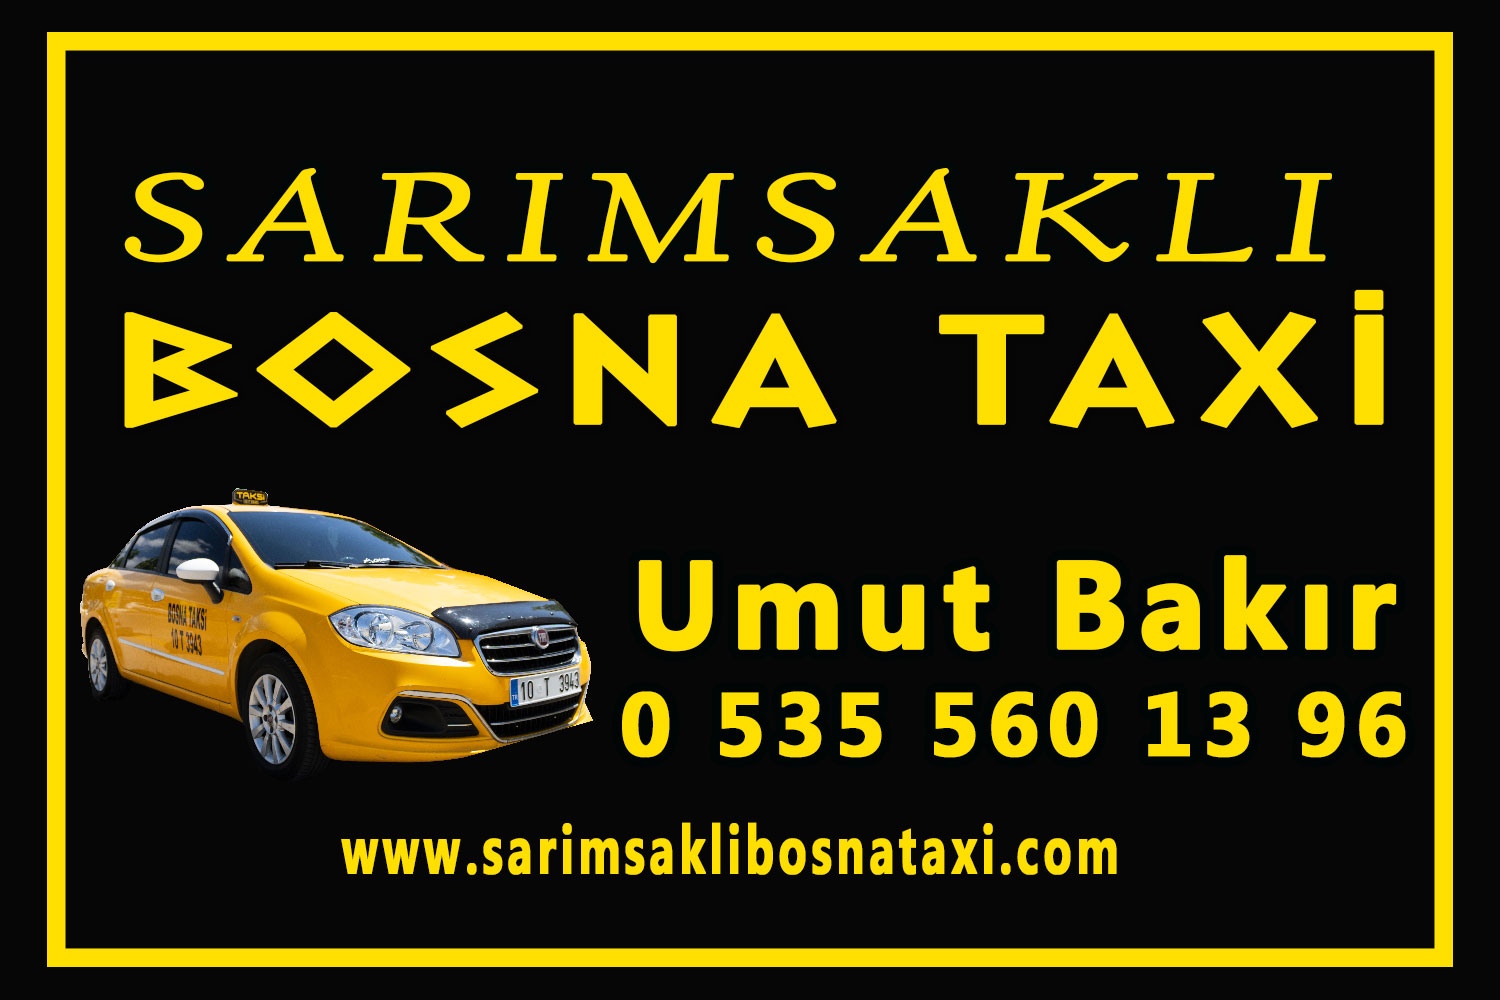 Sarımsaklı Bosna Taksi